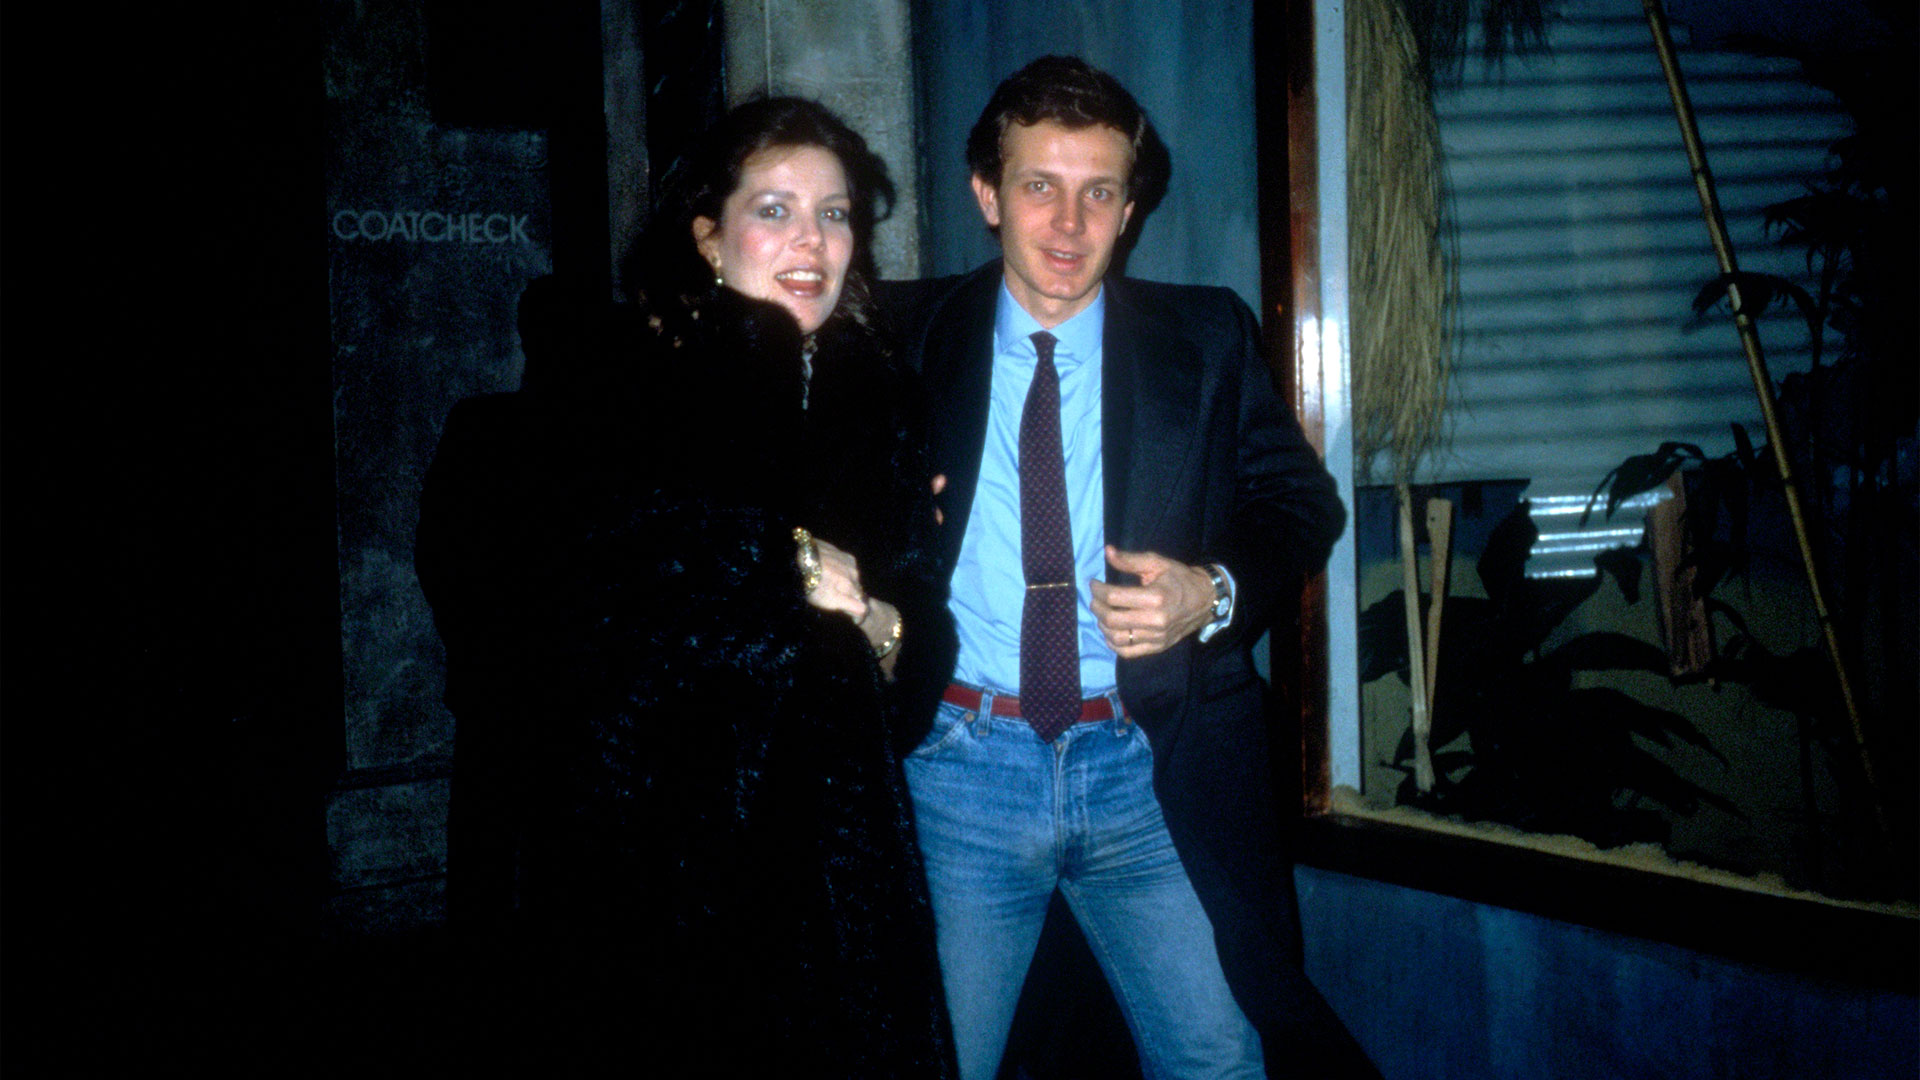 Caroline y Stefano Casiraghi en1984 sorprendido por fotógrafos en Nueva York. (Photo by Images Press/IMAGES/Getty Images)